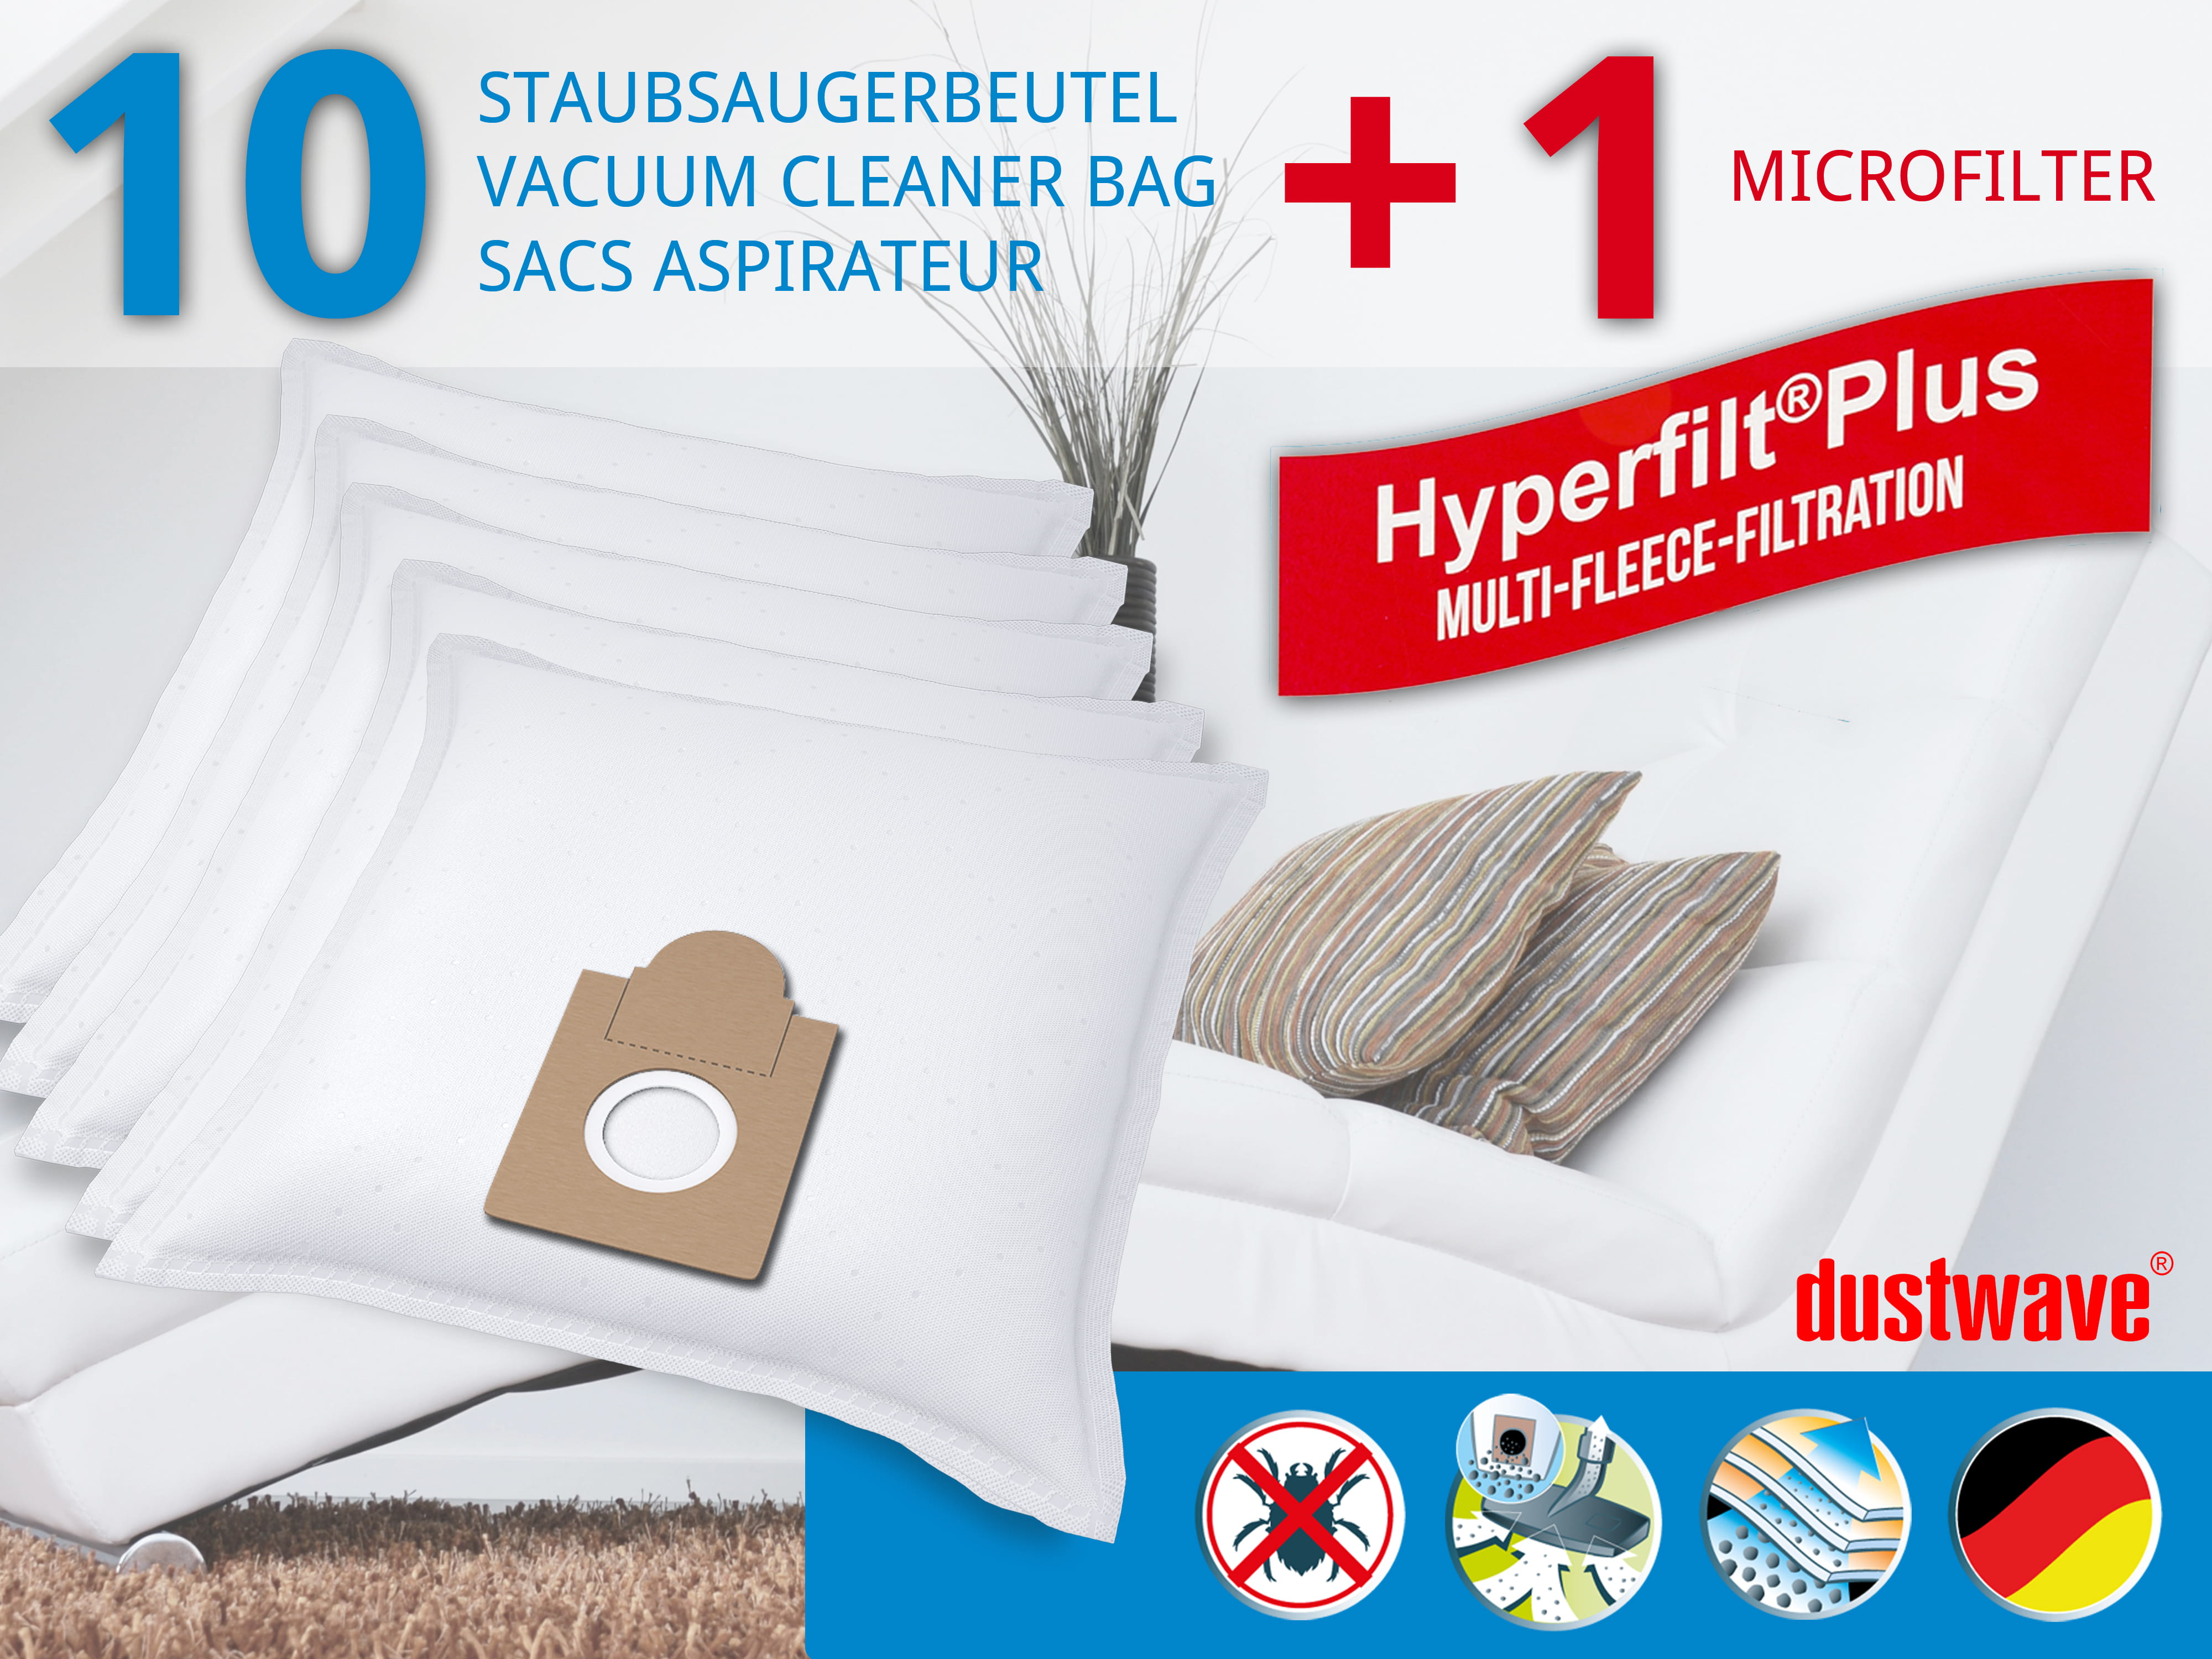 Dustwave® 10 Staubsaugerbeutel für Ariete Aspirium 2382 - hocheffizient, mehrlagiges Mikrovlies mit Hygieneverschluss - Made in Germany